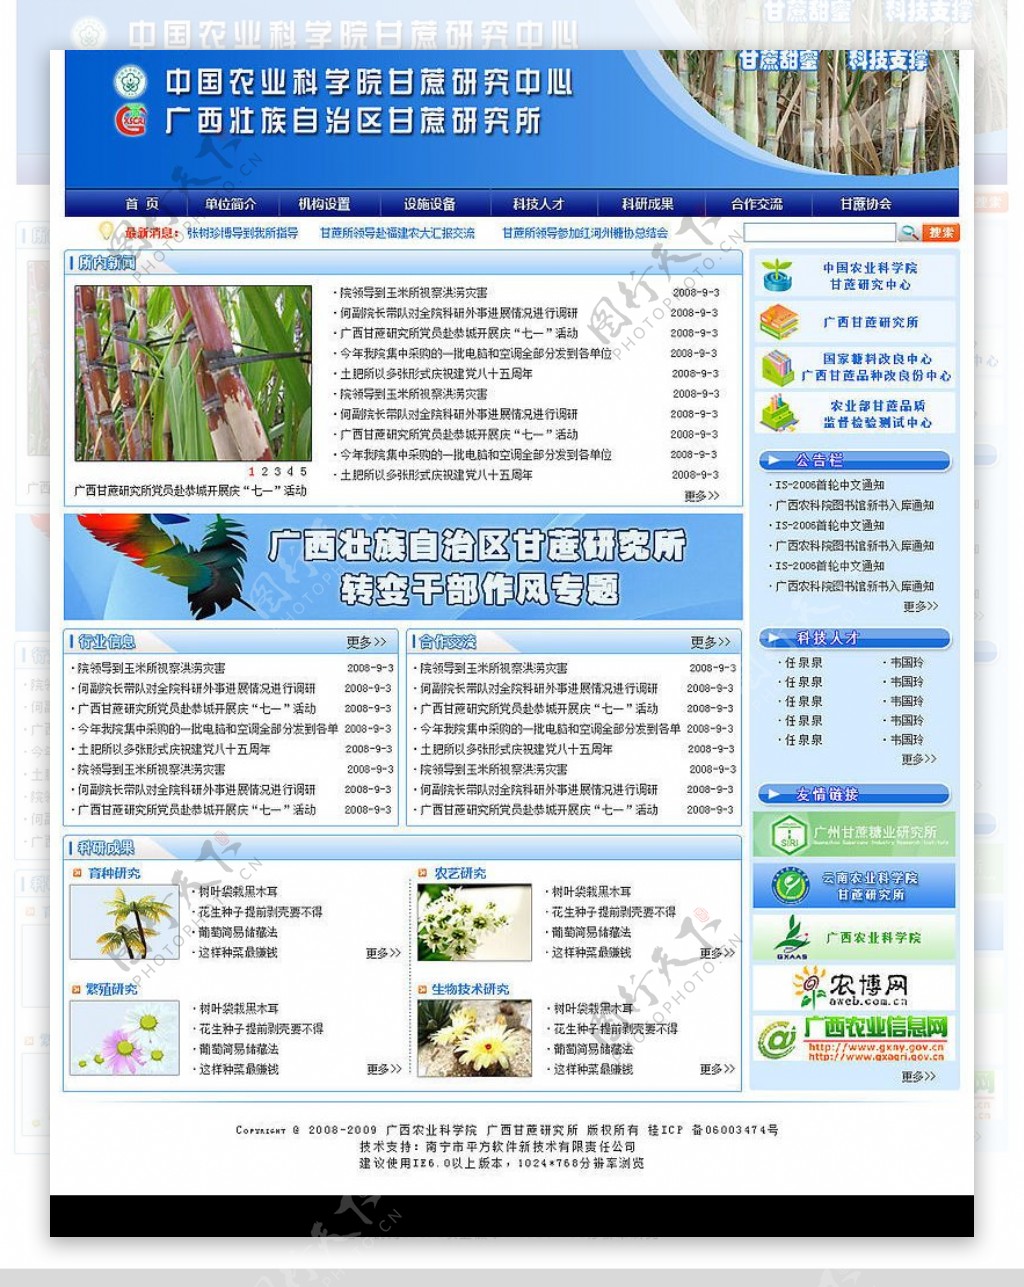 甘蔗研究所网站图片